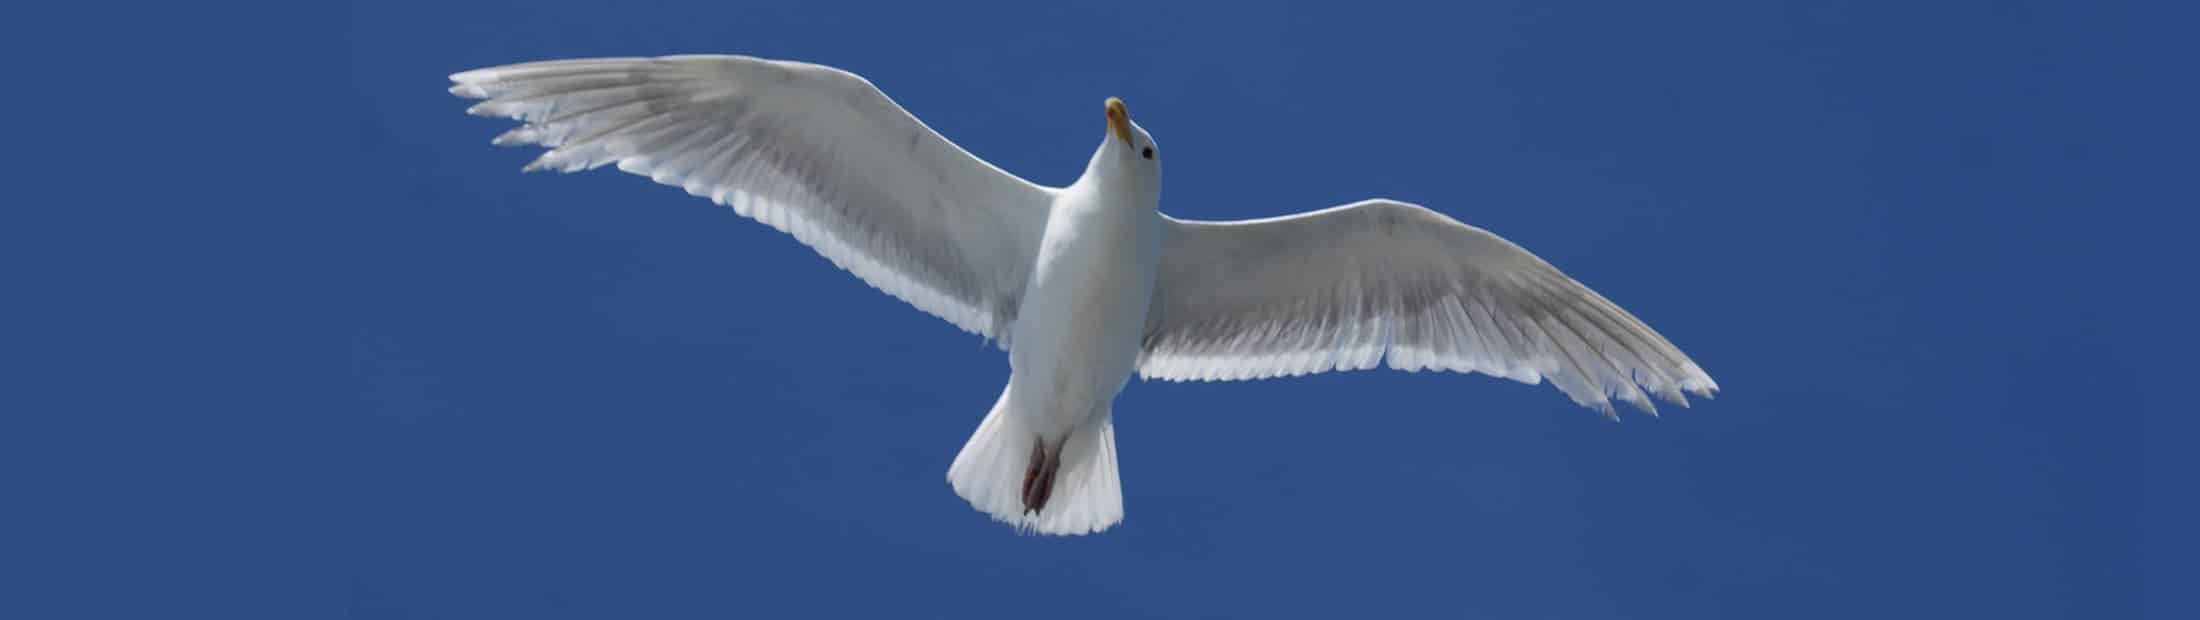 white bird flying in the blue sky